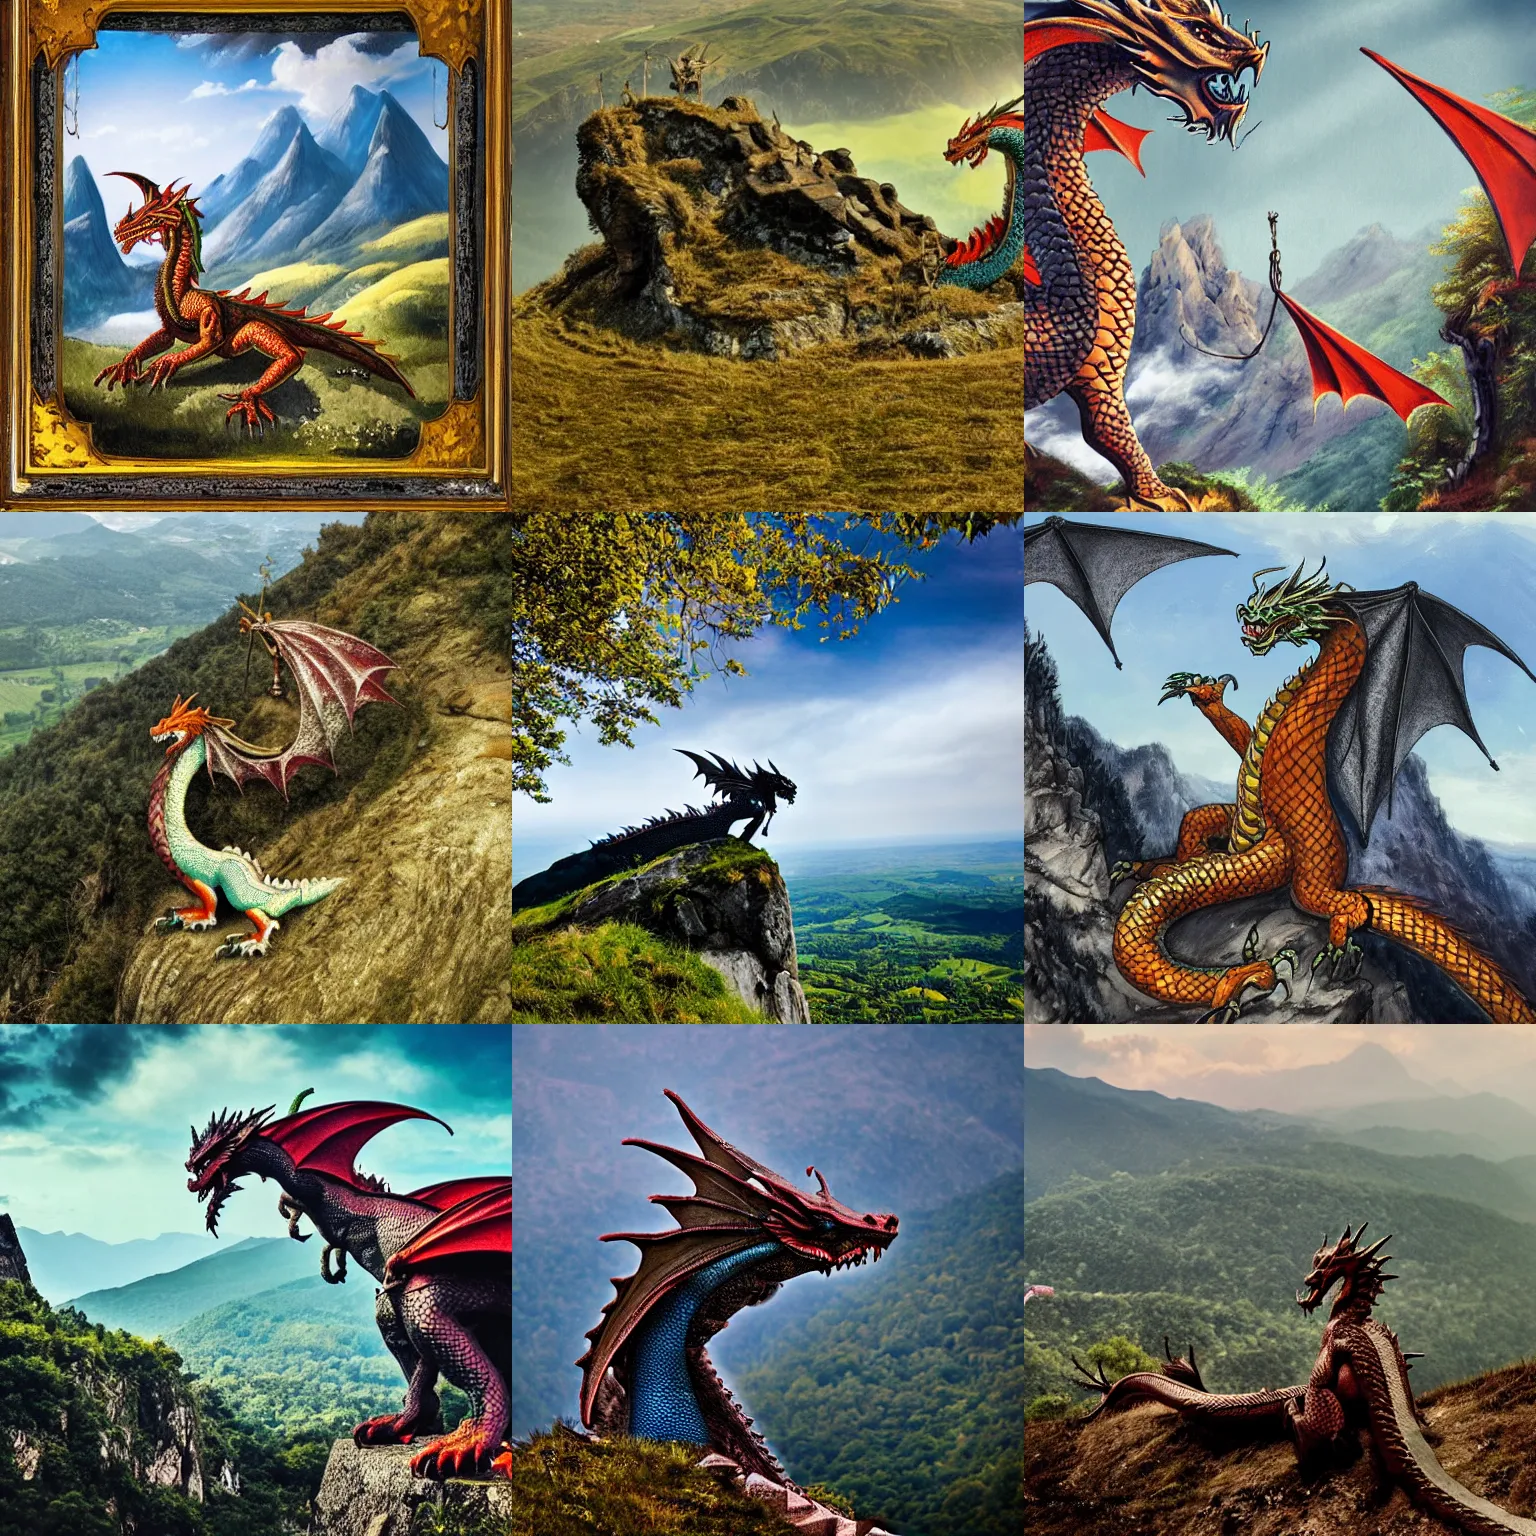 Prompt: dragon on mountain overlooking village